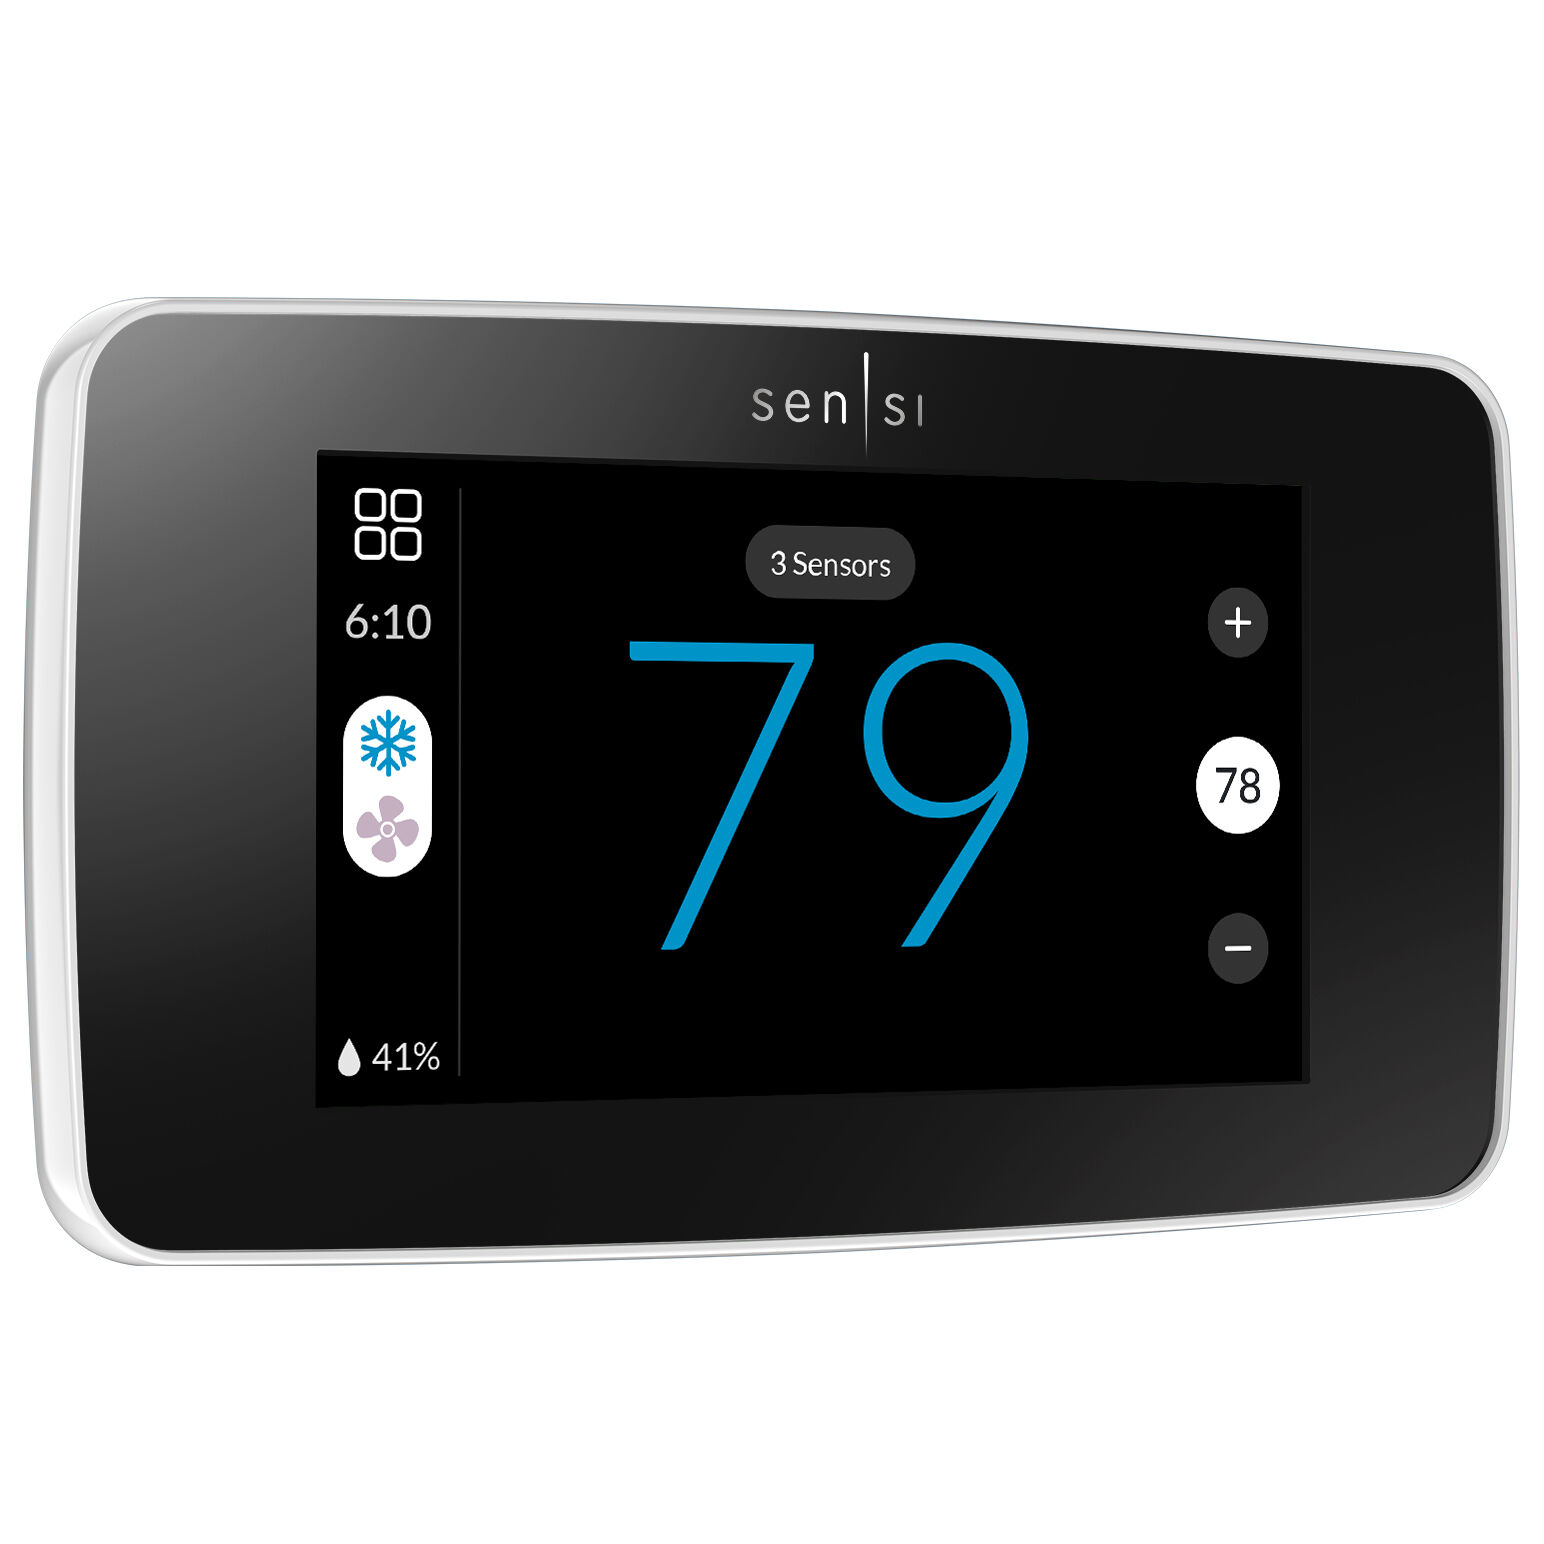 Sensi Touch 2 smart thermostat White | Duke Energy Online Savings 